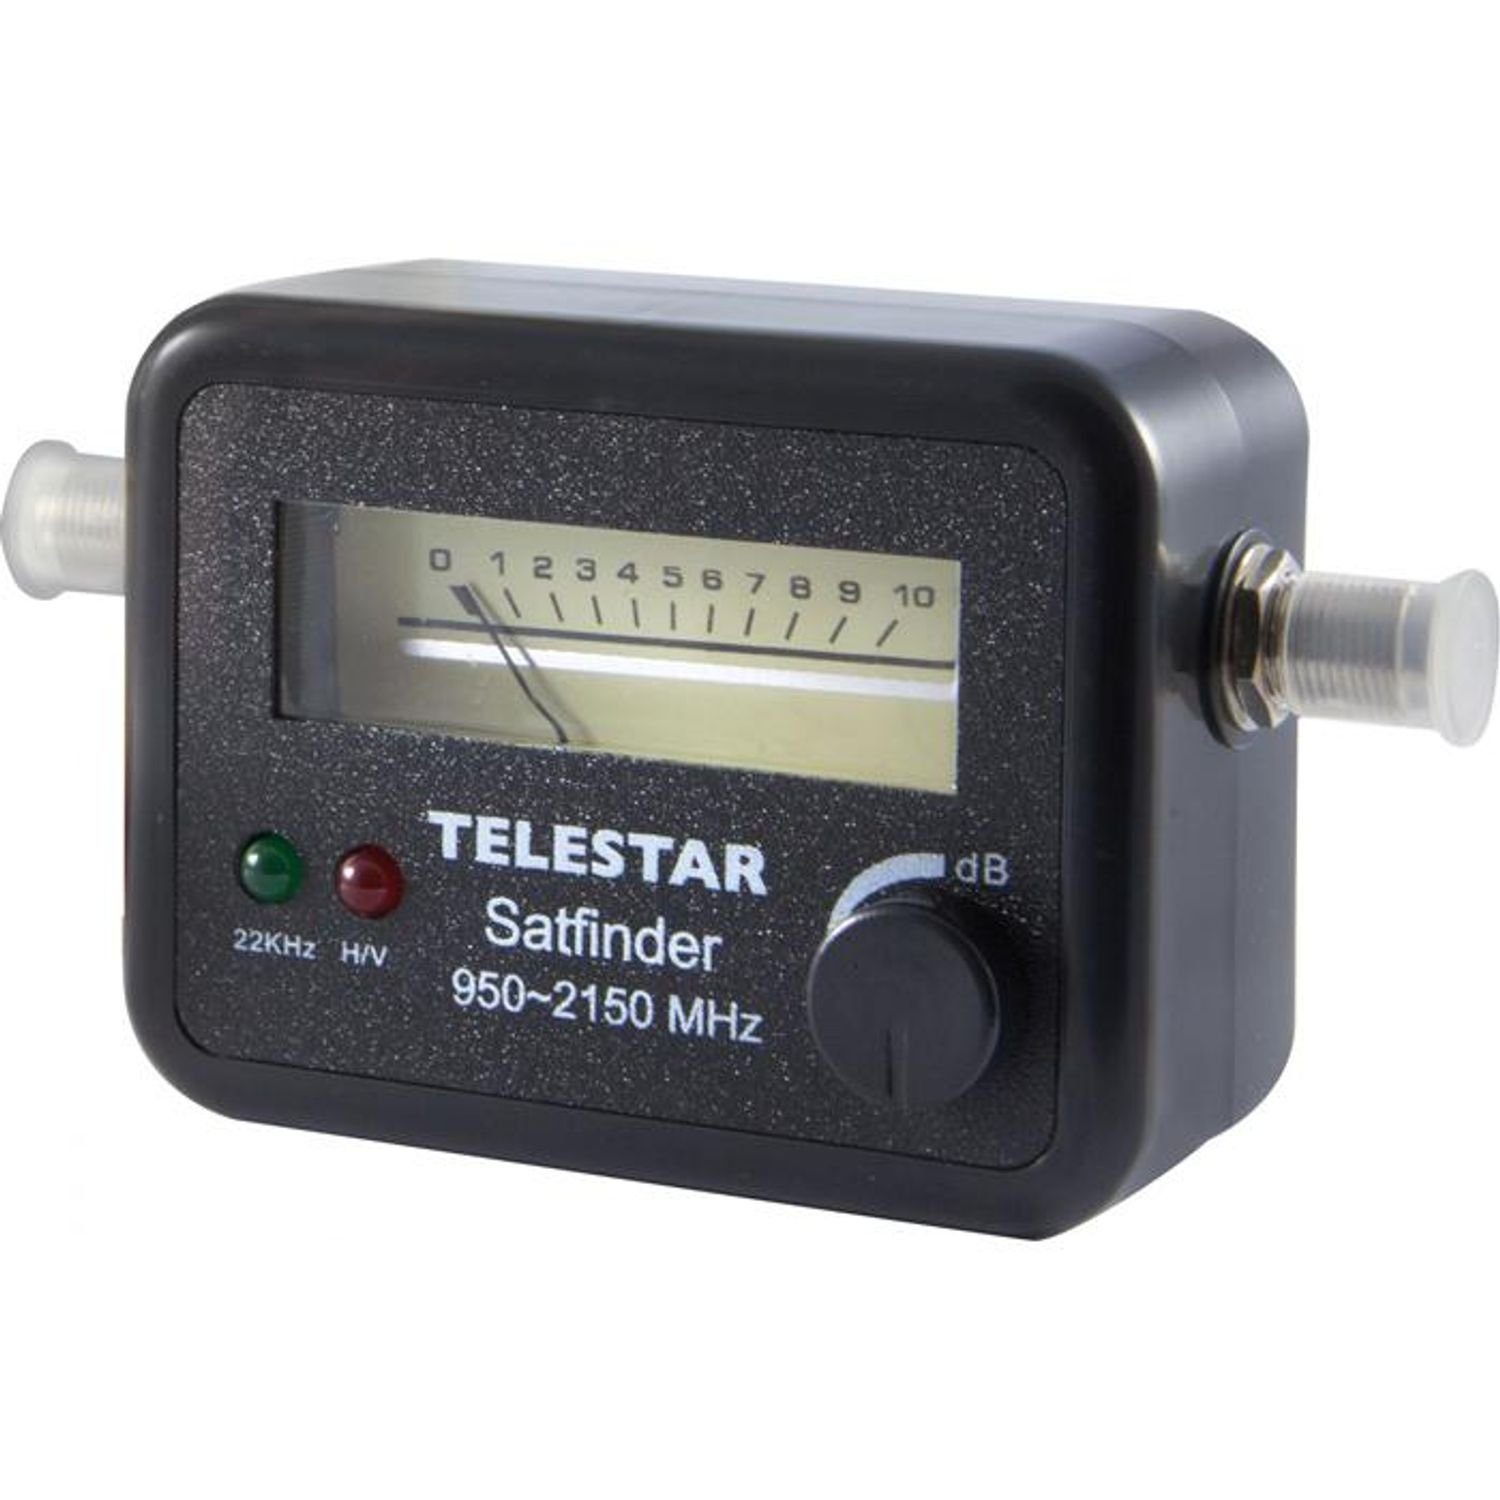 TELESTAR Satfinder Satfinder mit Analog Anzeige | SAT-Finder